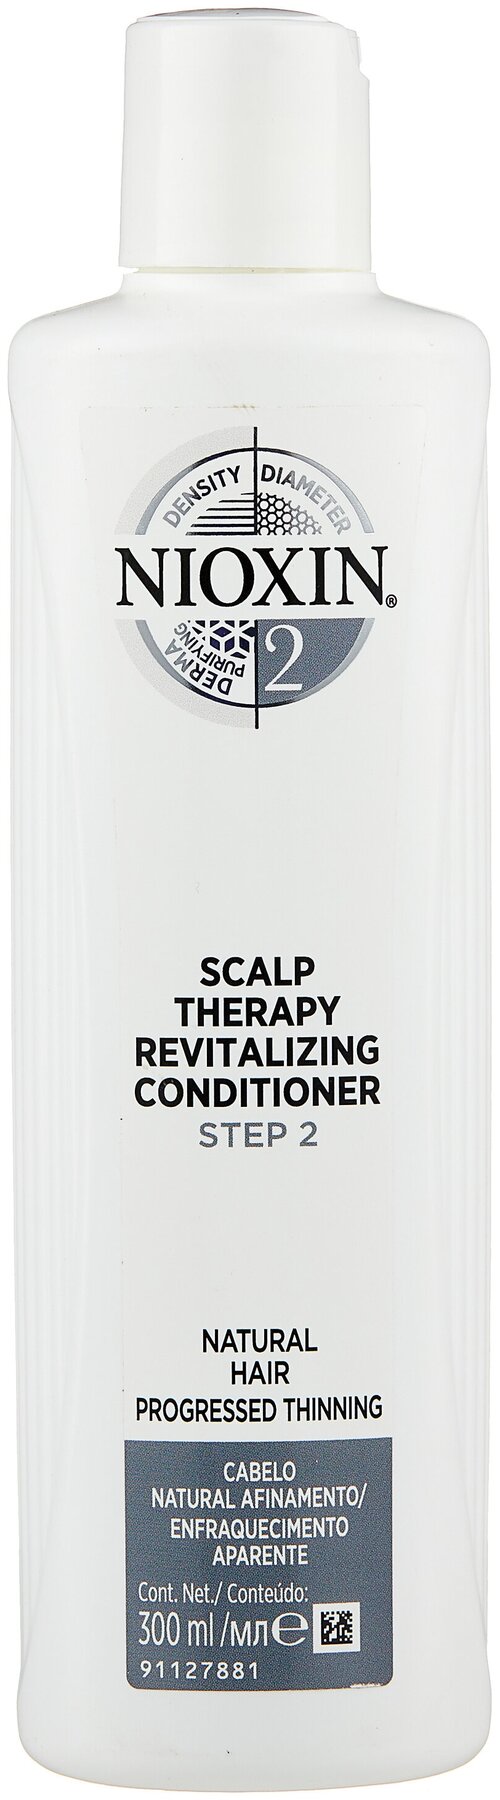 Nioxin кондиционер Scalp Therapy Conditioner System 2 для натуральных истонченных волос, 300 мл